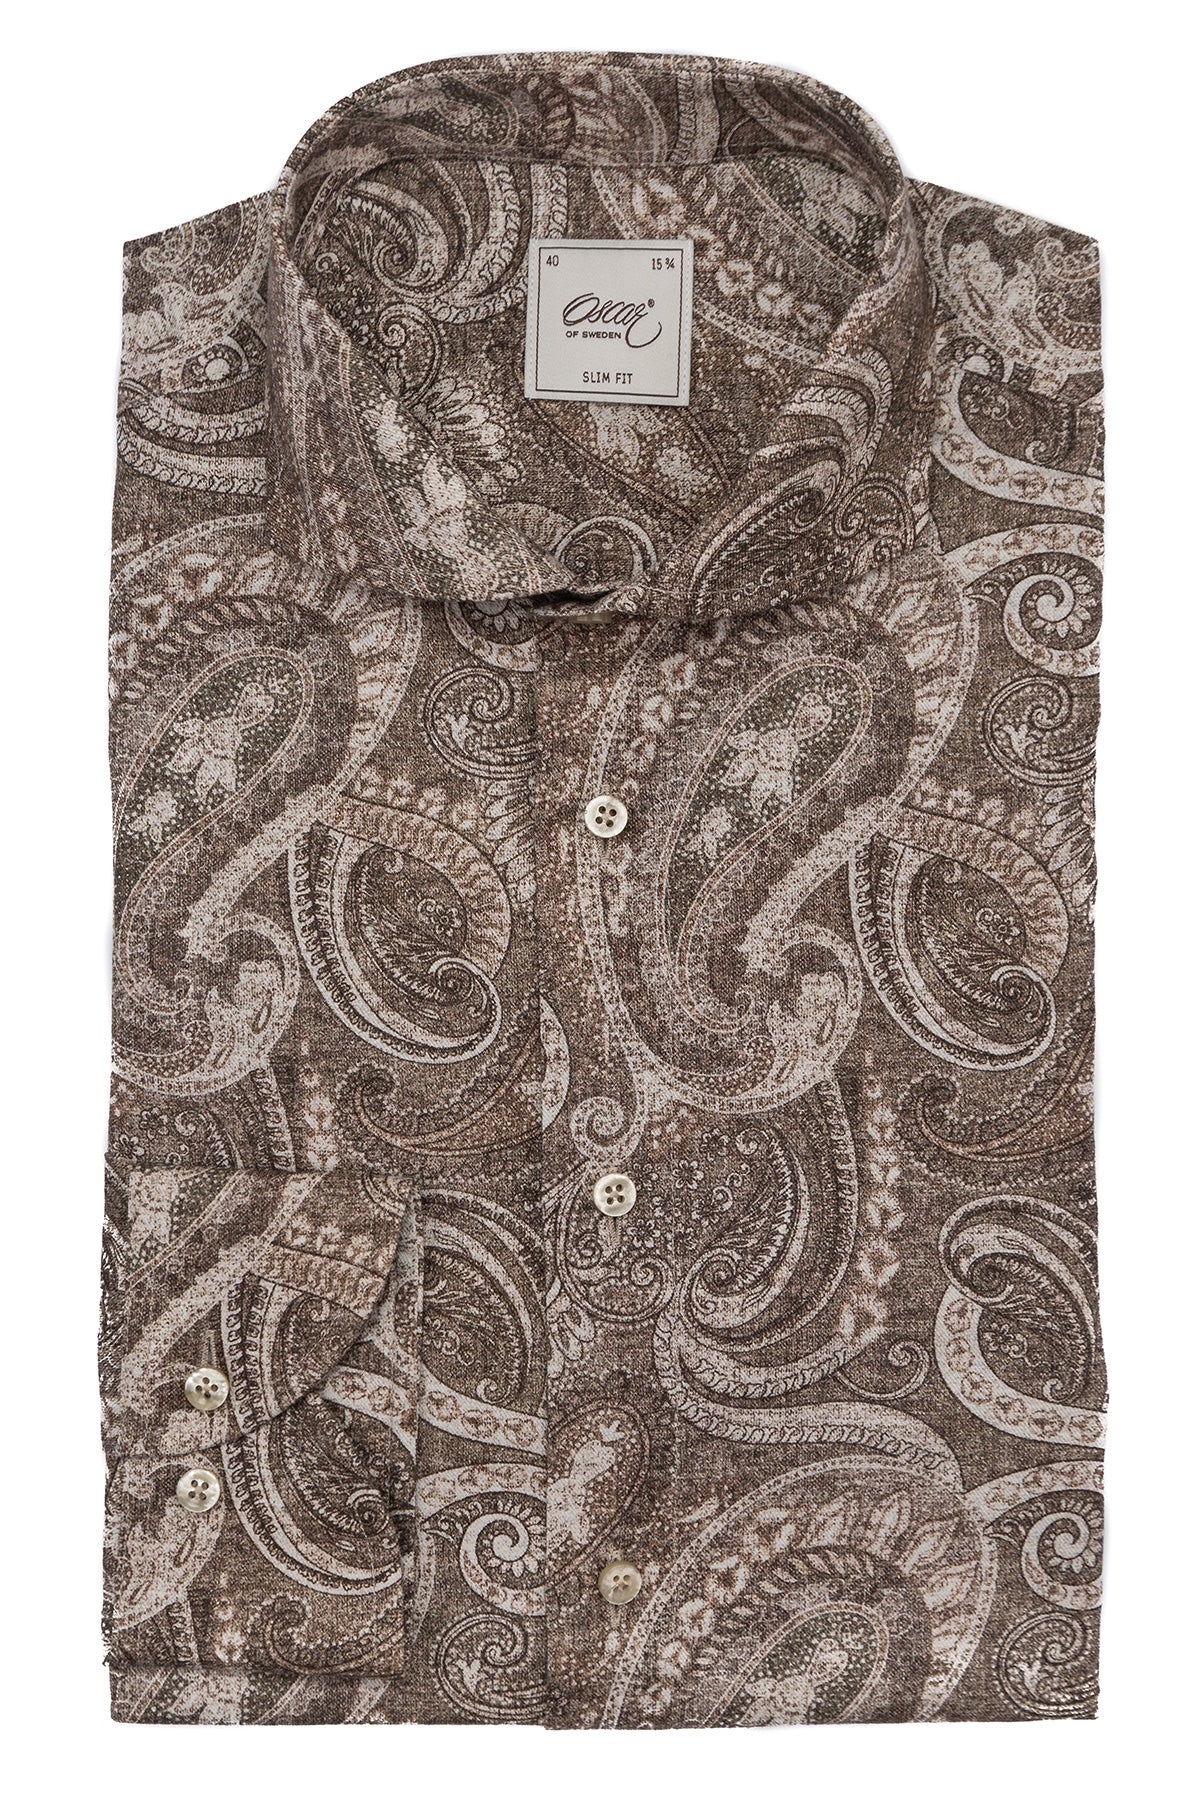 Brown paisley printed slim fit shirt